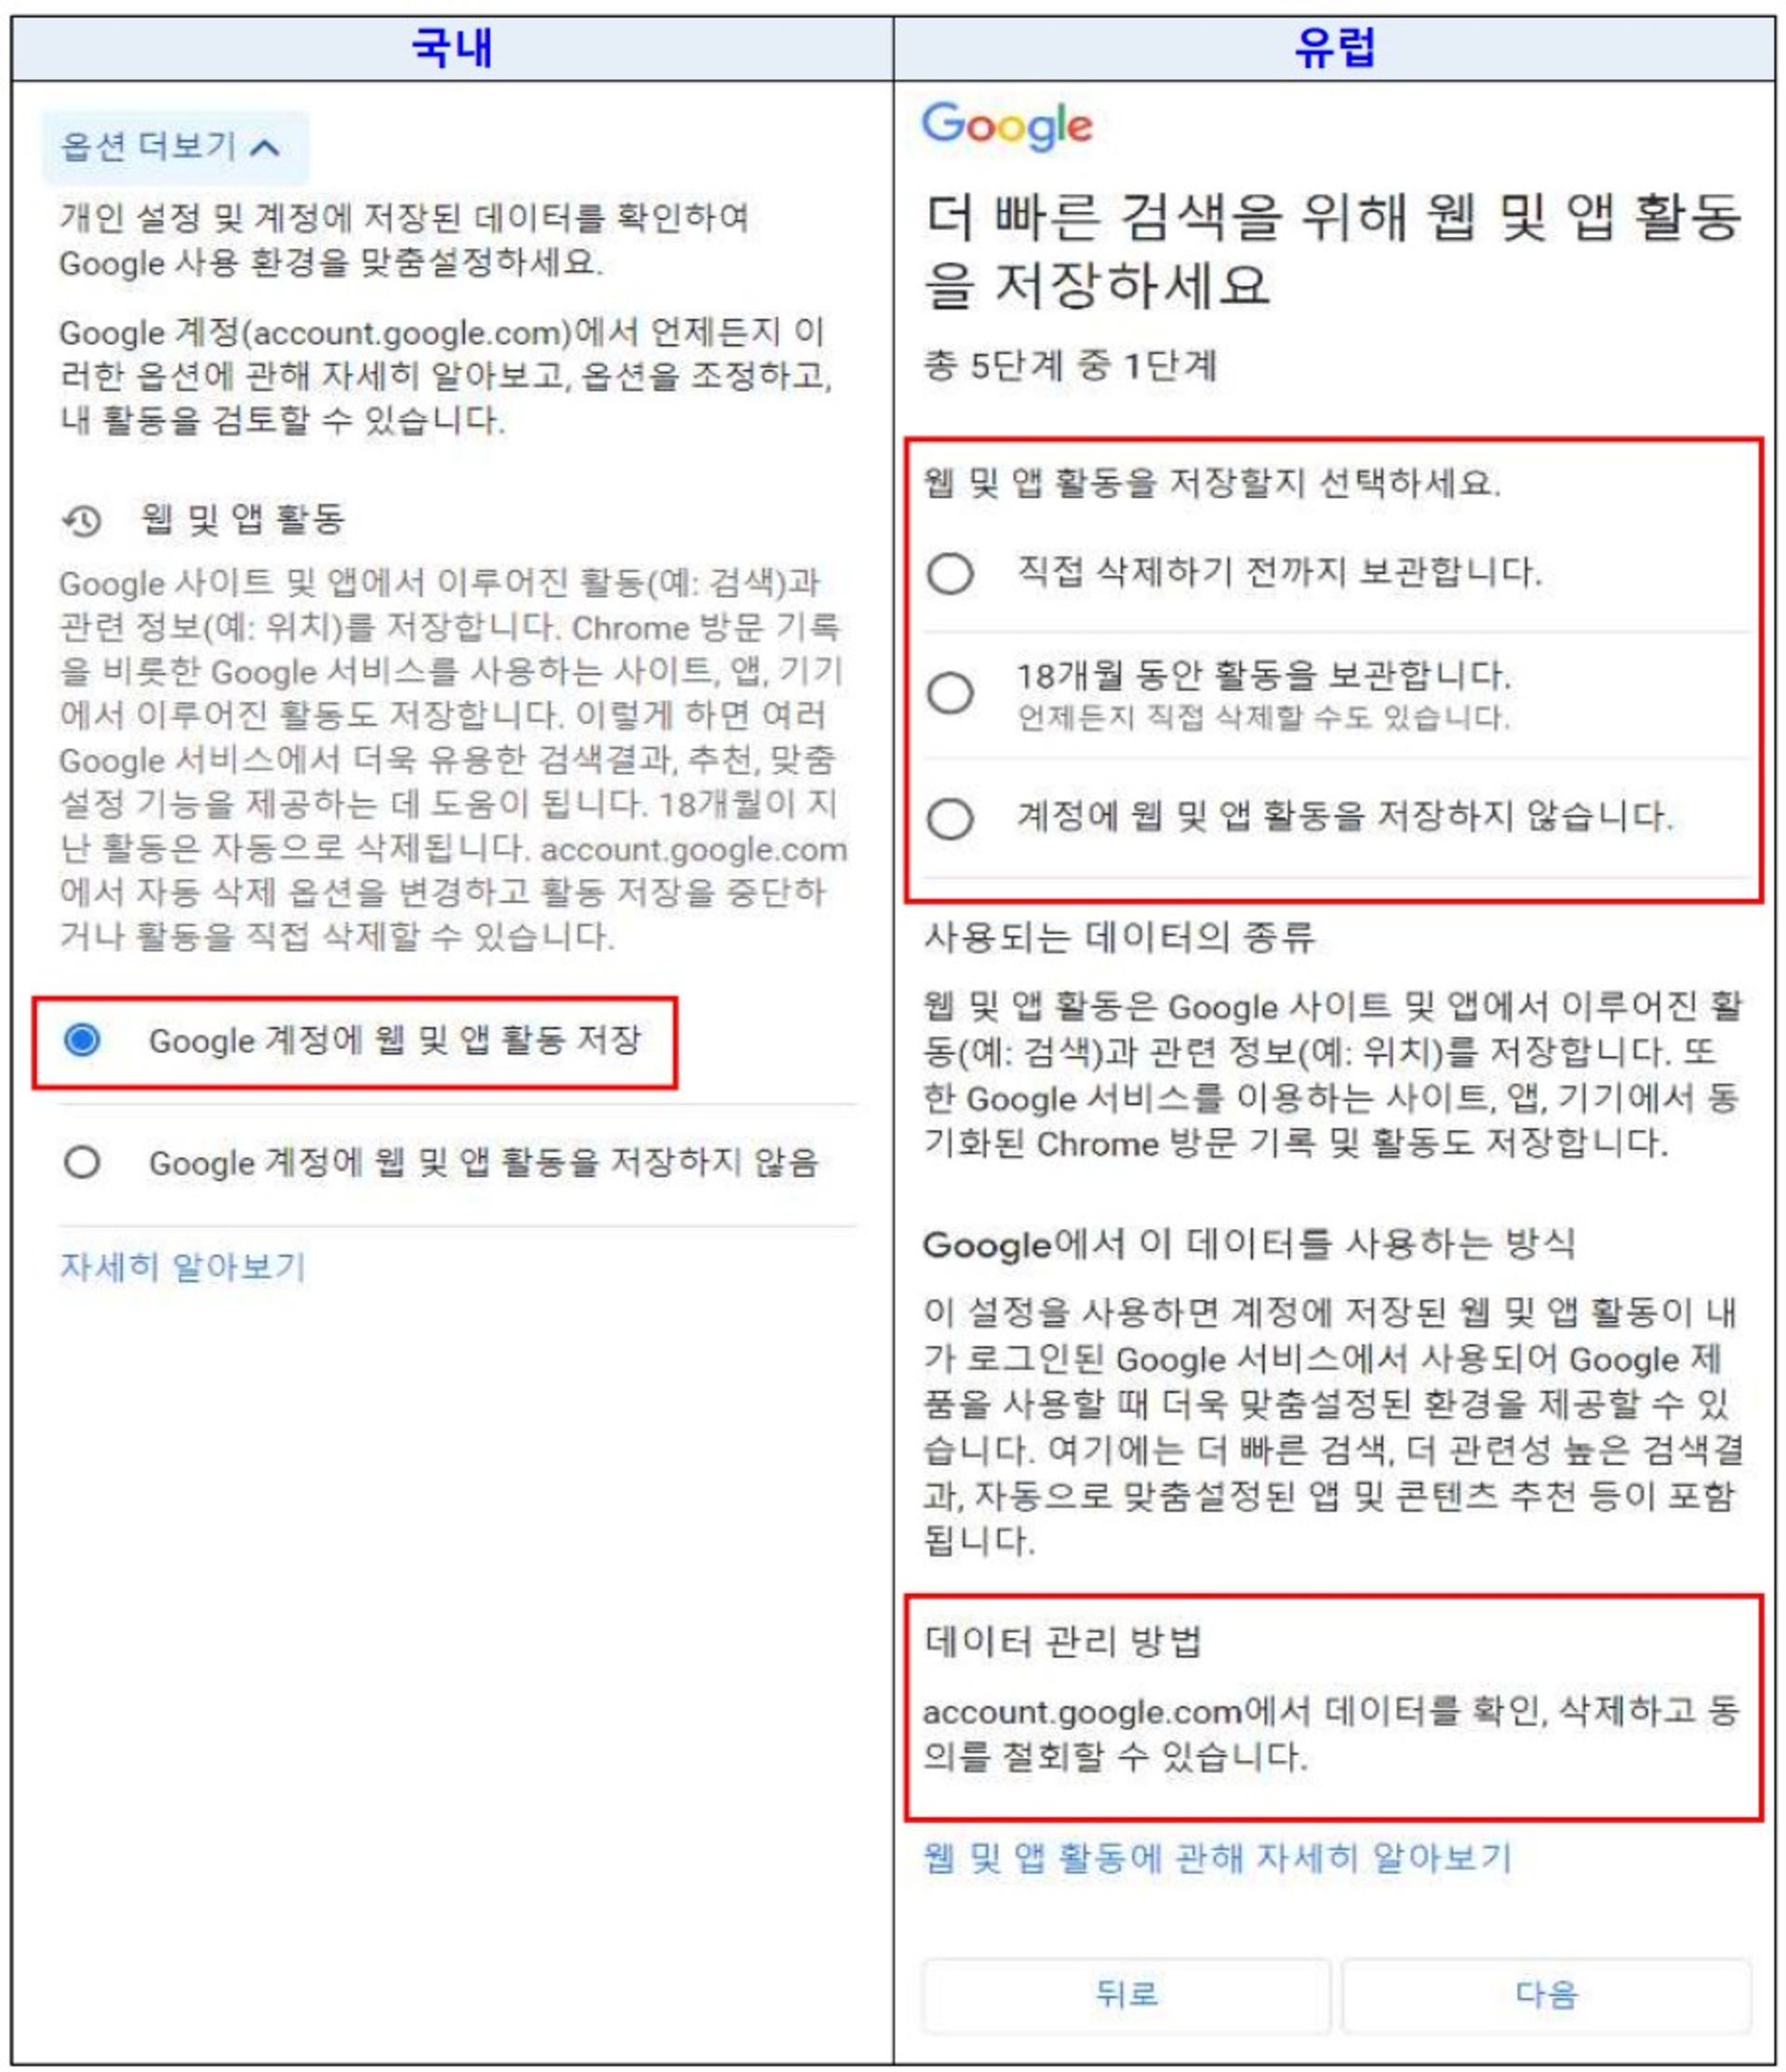 صفحه رضایت کاربران از جمع آوری اطلاعات گوگل برای کره و اروپا